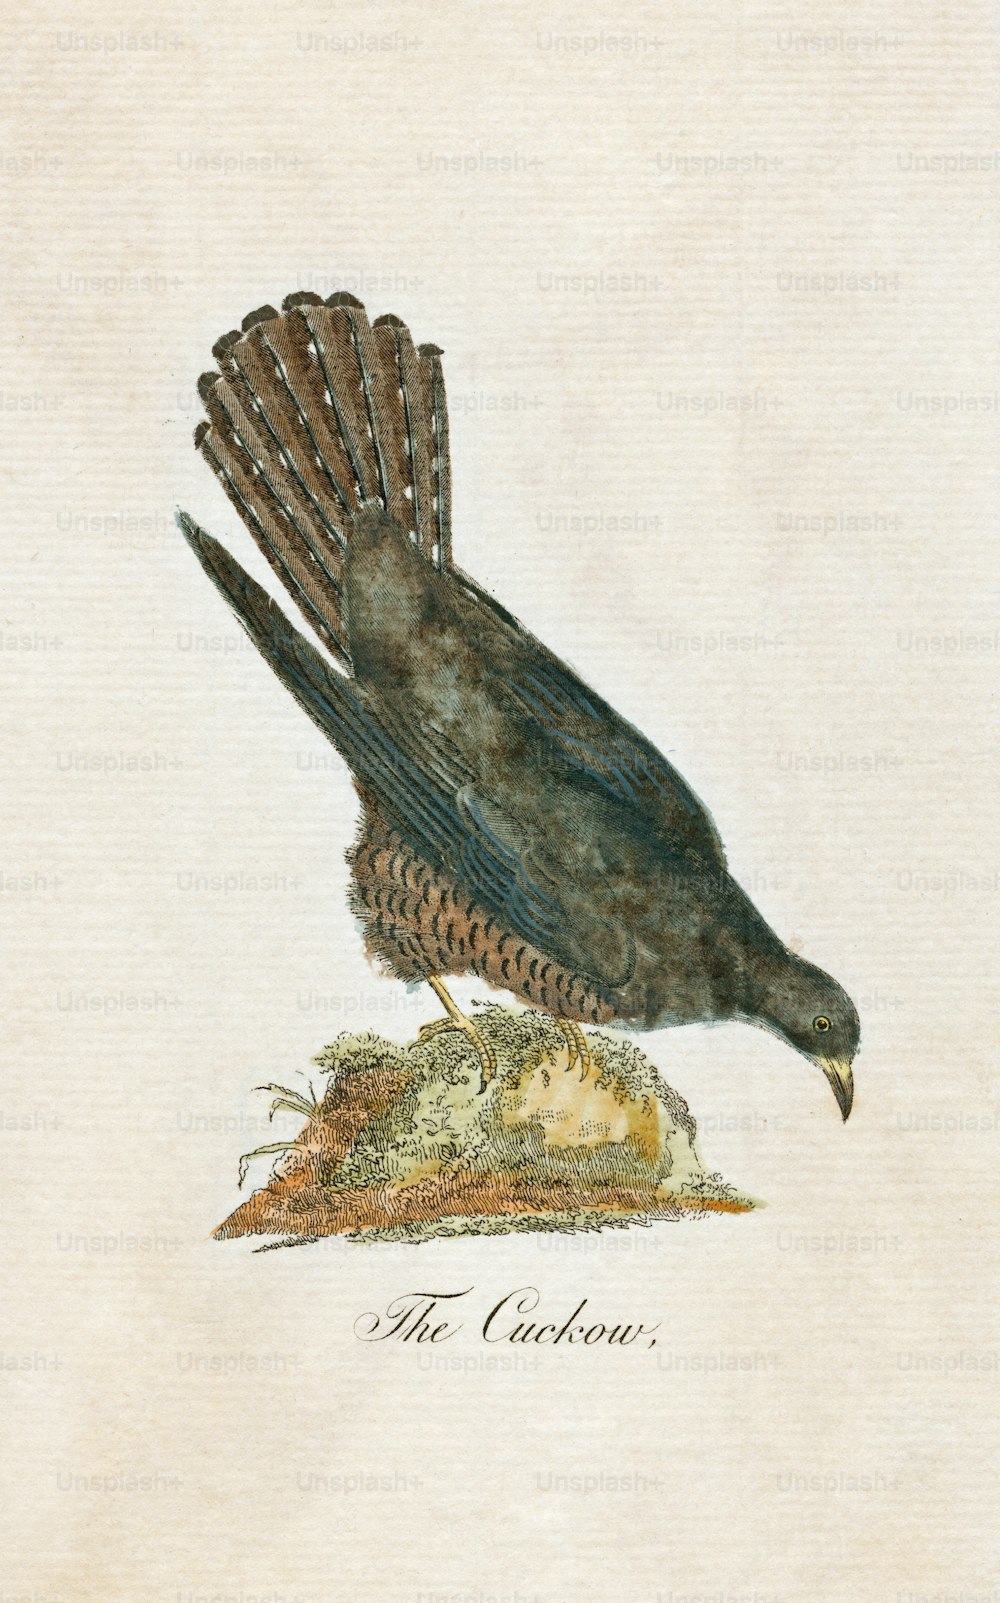 1850년경 'Cuckow' 또는 뻐꾸기의 접시 삽화. (사진: 헐튼 아카이브/게티 이미지)